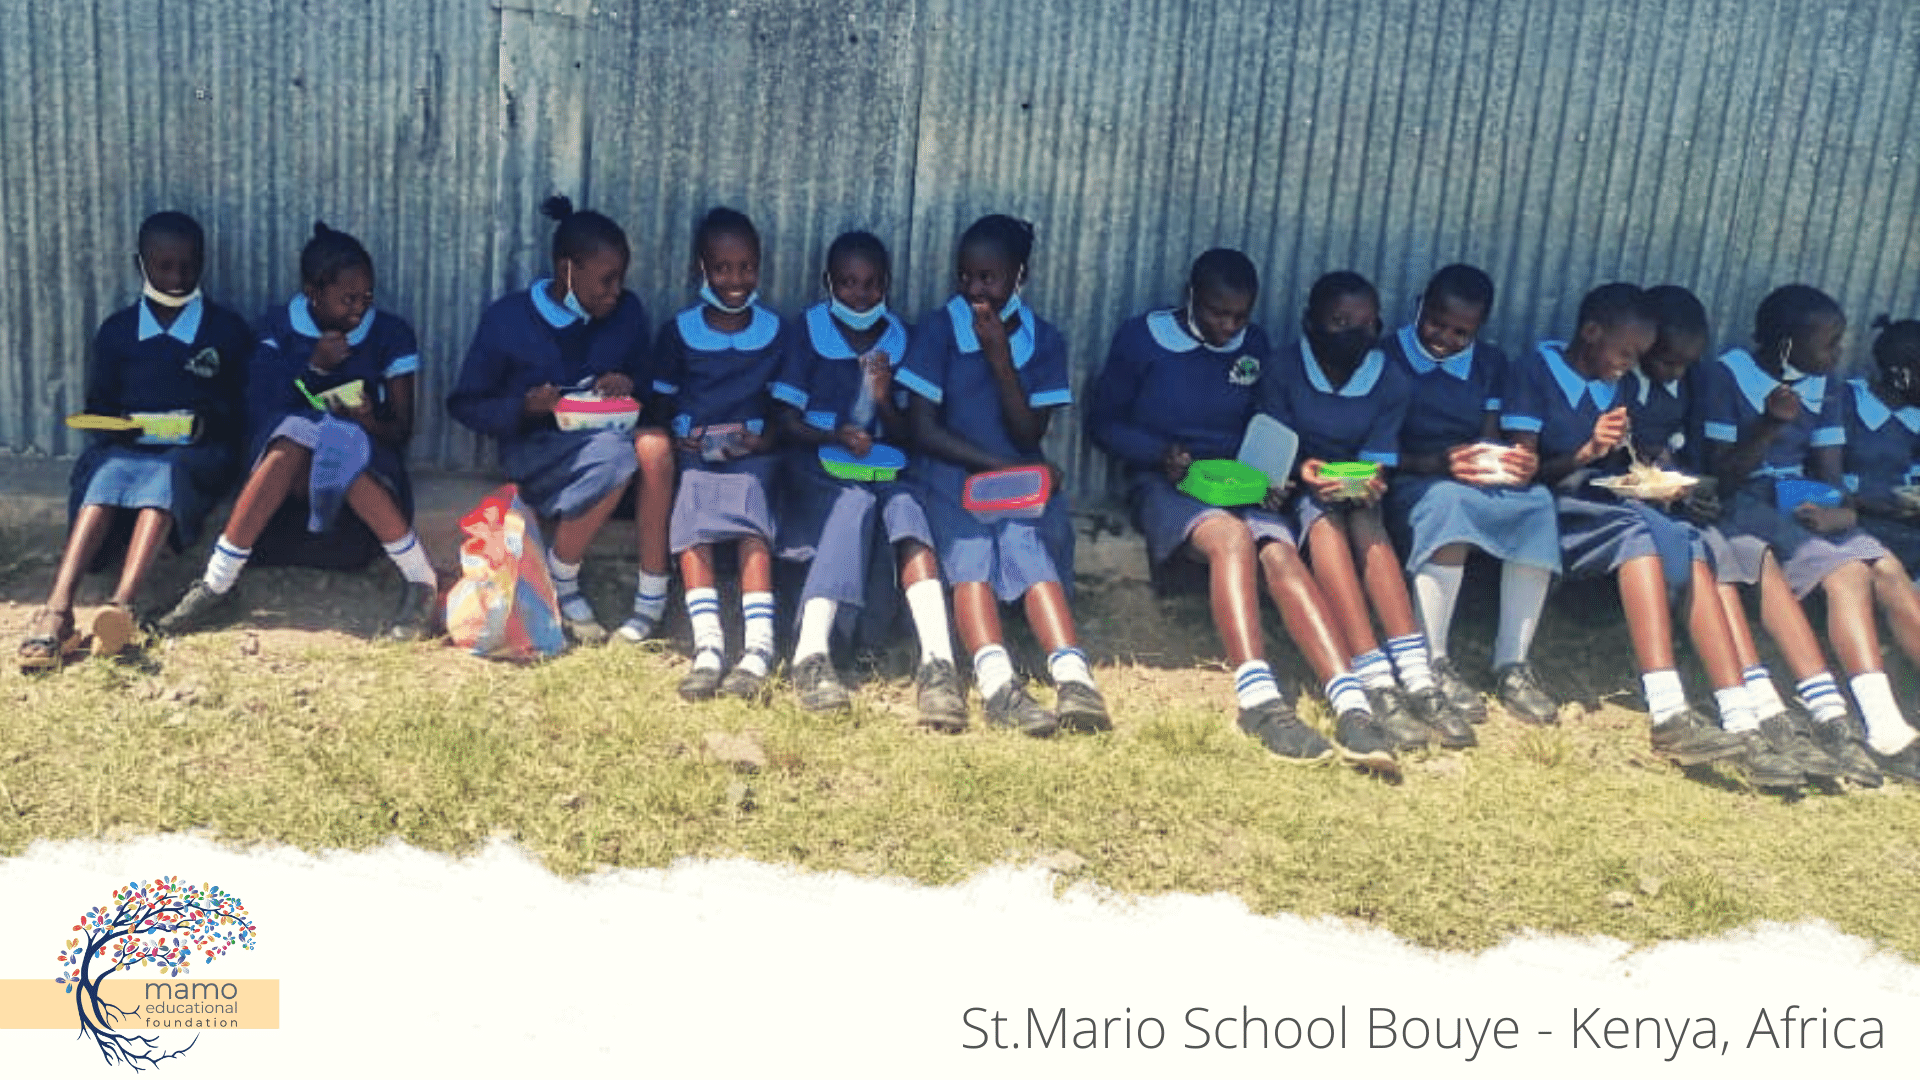 St.Mario School - Adotta un insegnante-Mamo Educational Foundation